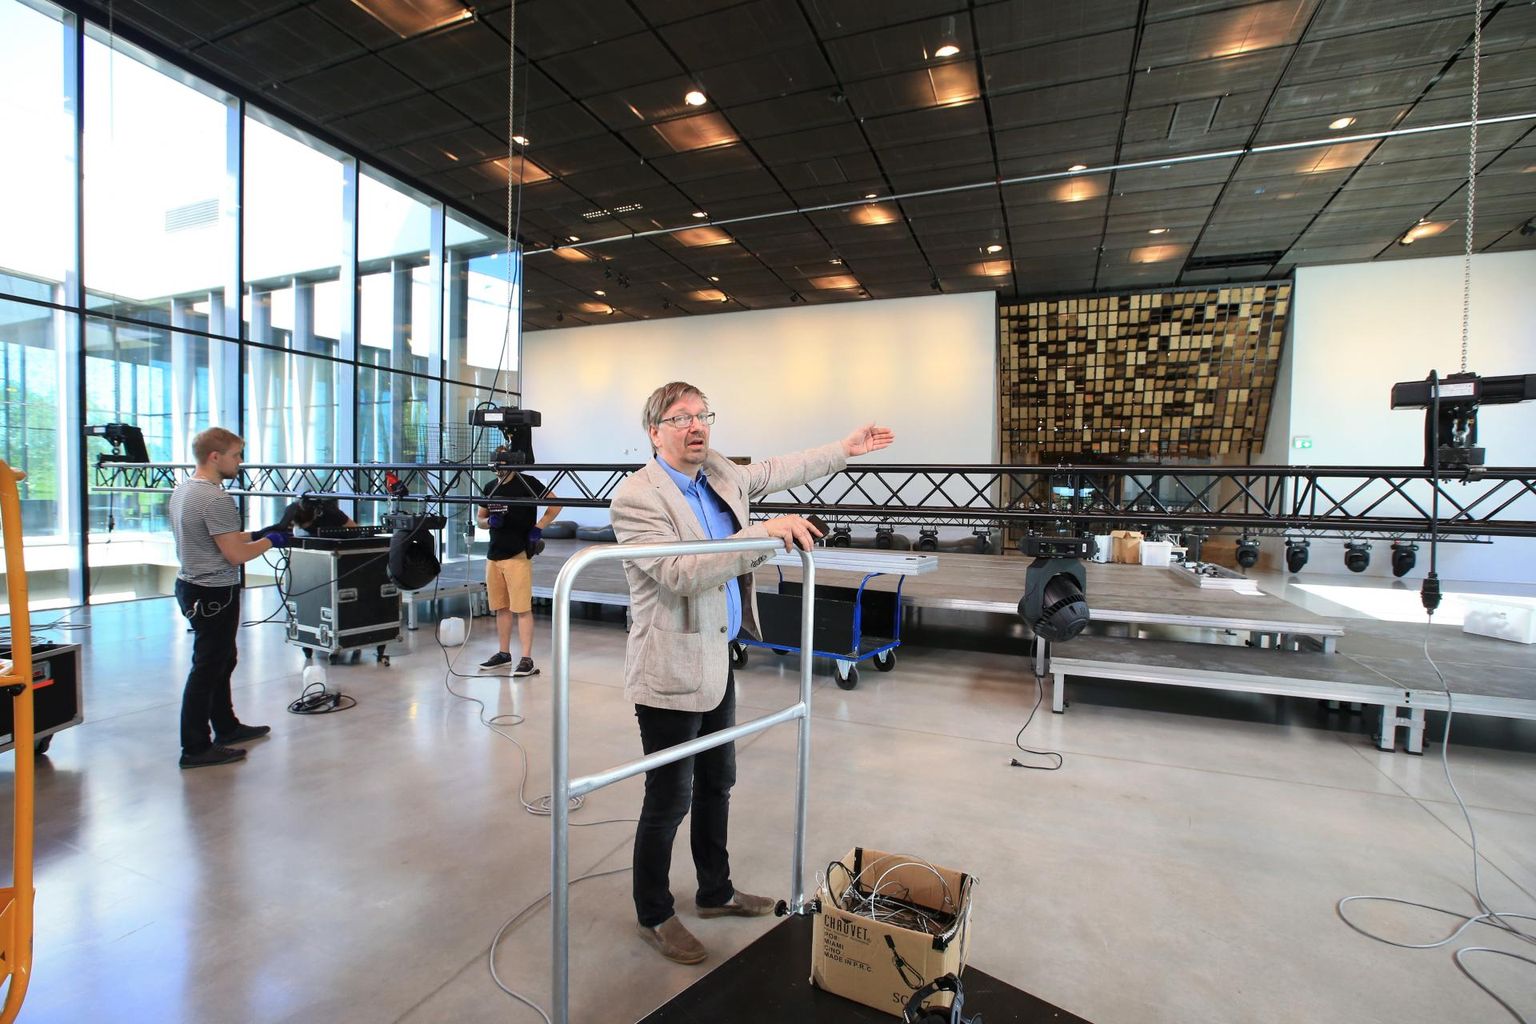 Eesti Rahva Muuseumi arendusdirektor Viljar Pohhomov näitab, kuidas kerkib muuseumi sillaalale kolmest moodulist koosnev lava ja kuhu paigaldatakse videoekraan.